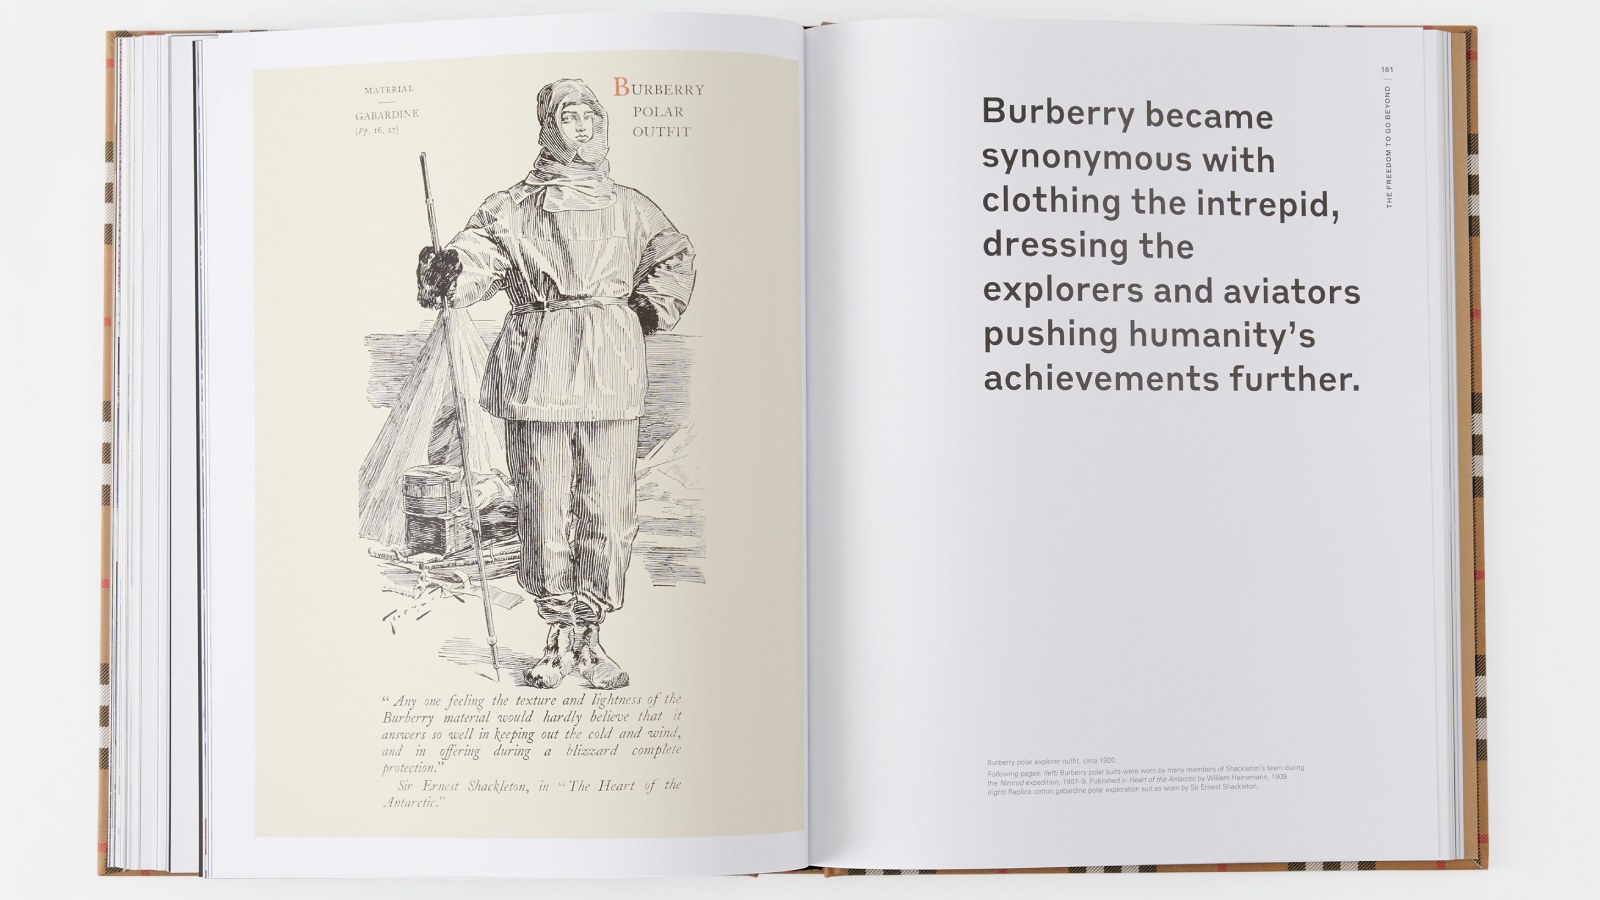 A la izquierda, ilustración de un hombre con traje de explorador diseñado por Burberry en los años 20. En la página contigua se puede leer: “La casa se convirtió en sinónimo de vestir a los intrépidos y aviadores que empujaban los logros de la humanidad”. Páginas 180 y 181. - imagen 3